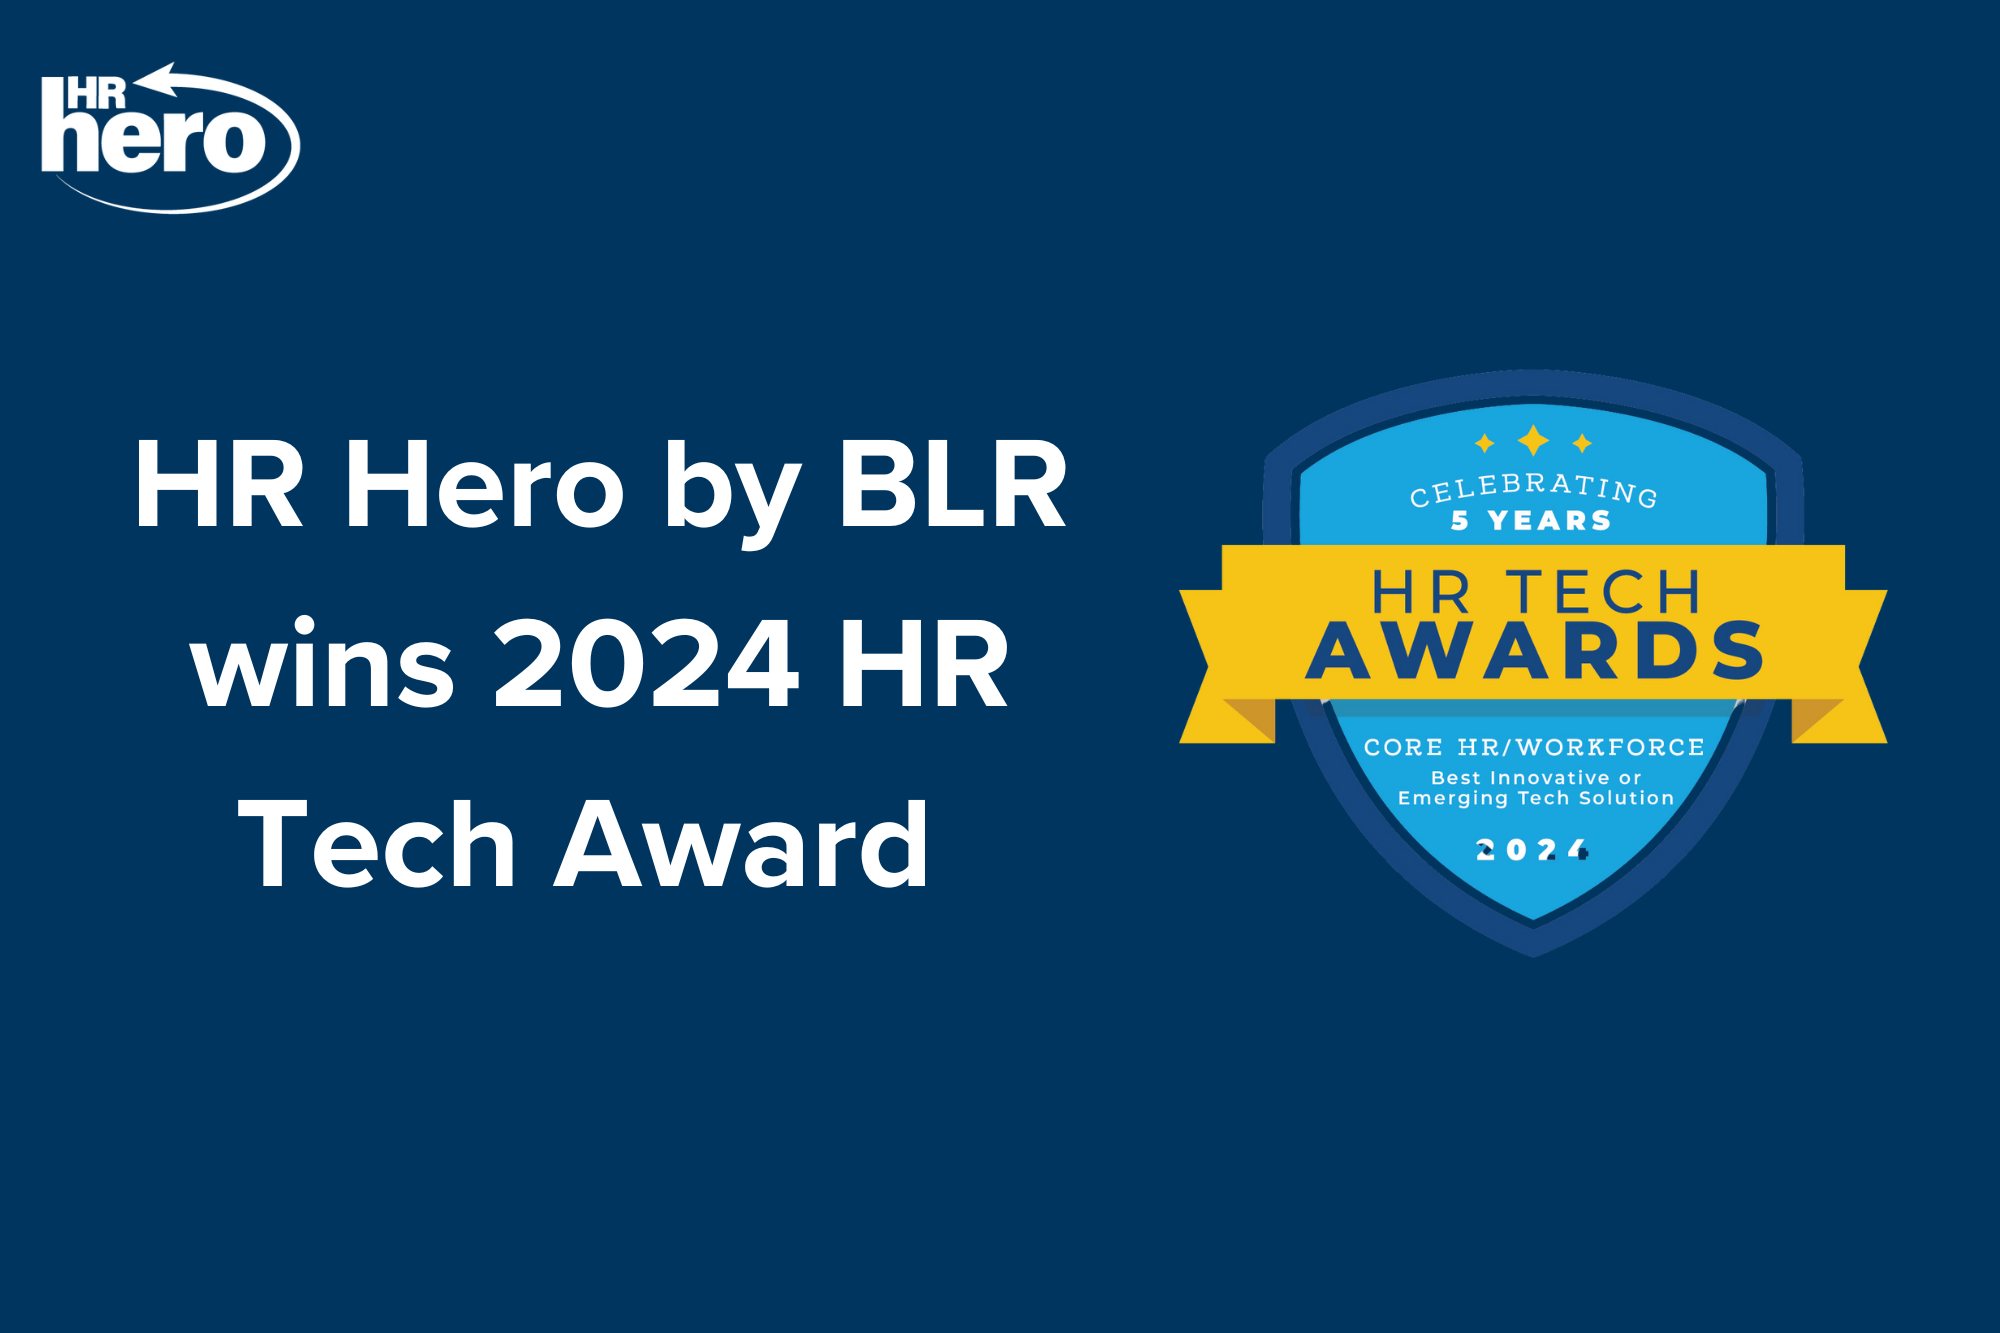 HR Hero wins 2024 HR Tech Award